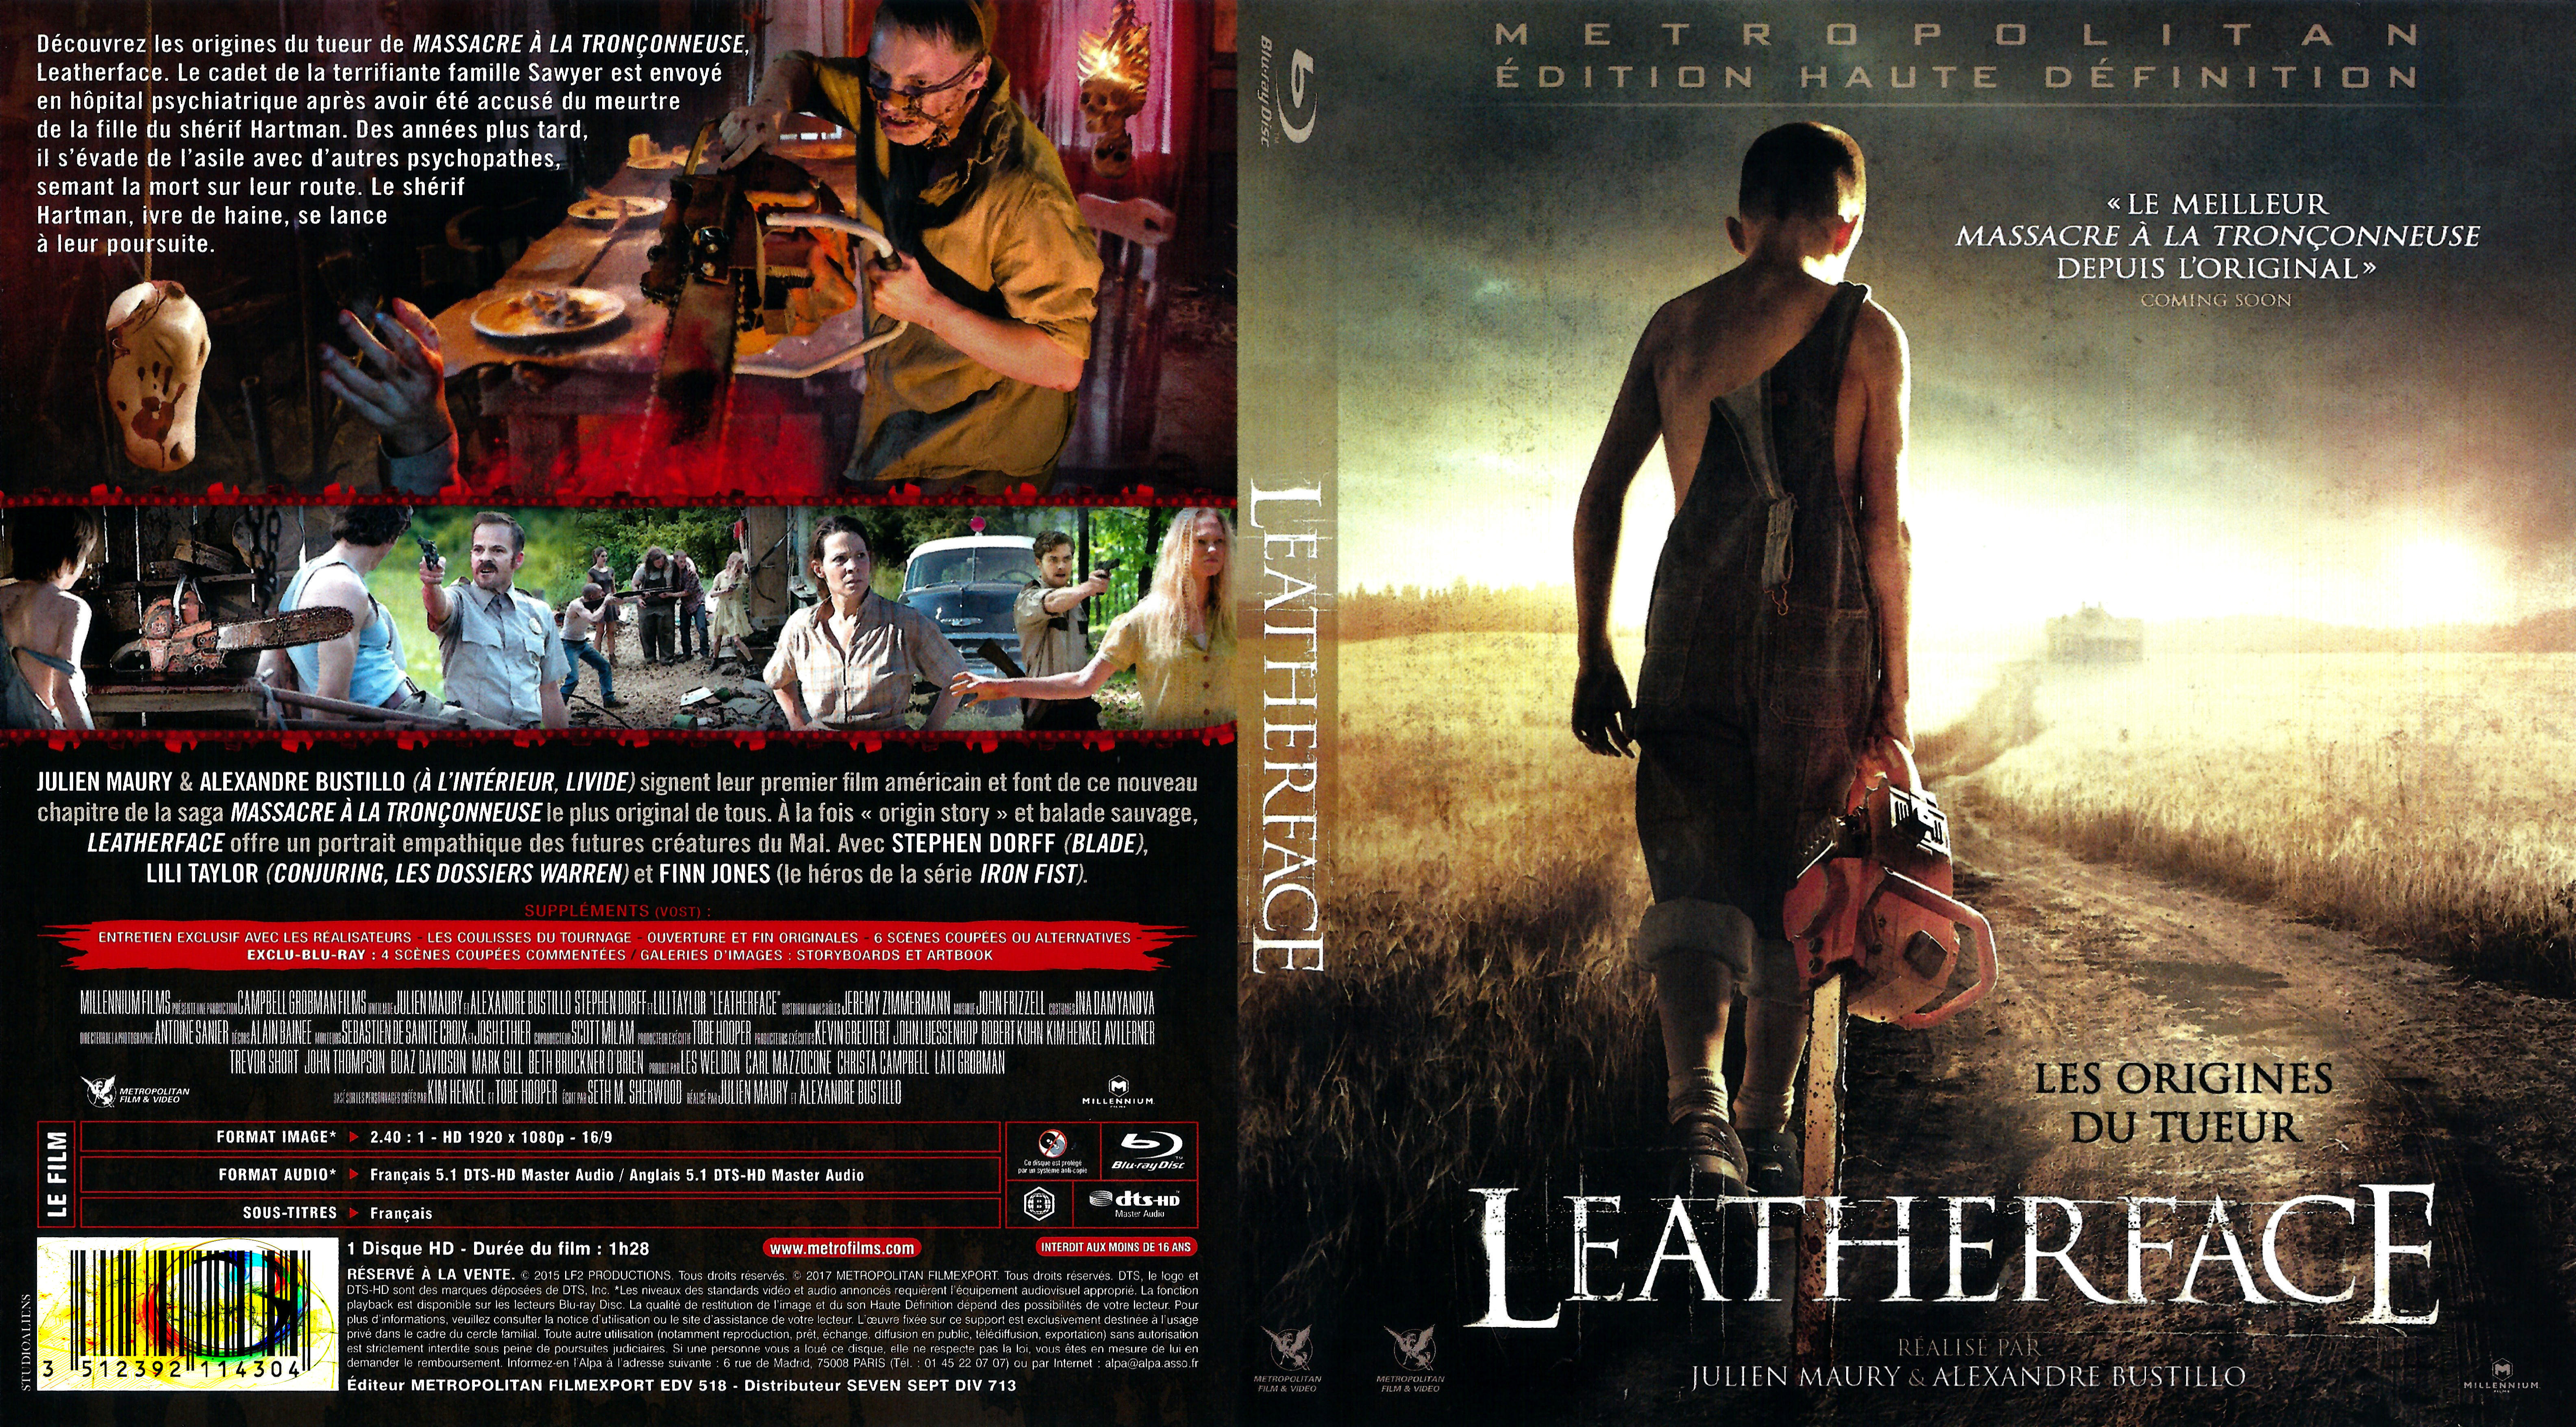 Jaquette DVD Leatherface les origines du tueur (BLU-RAY)